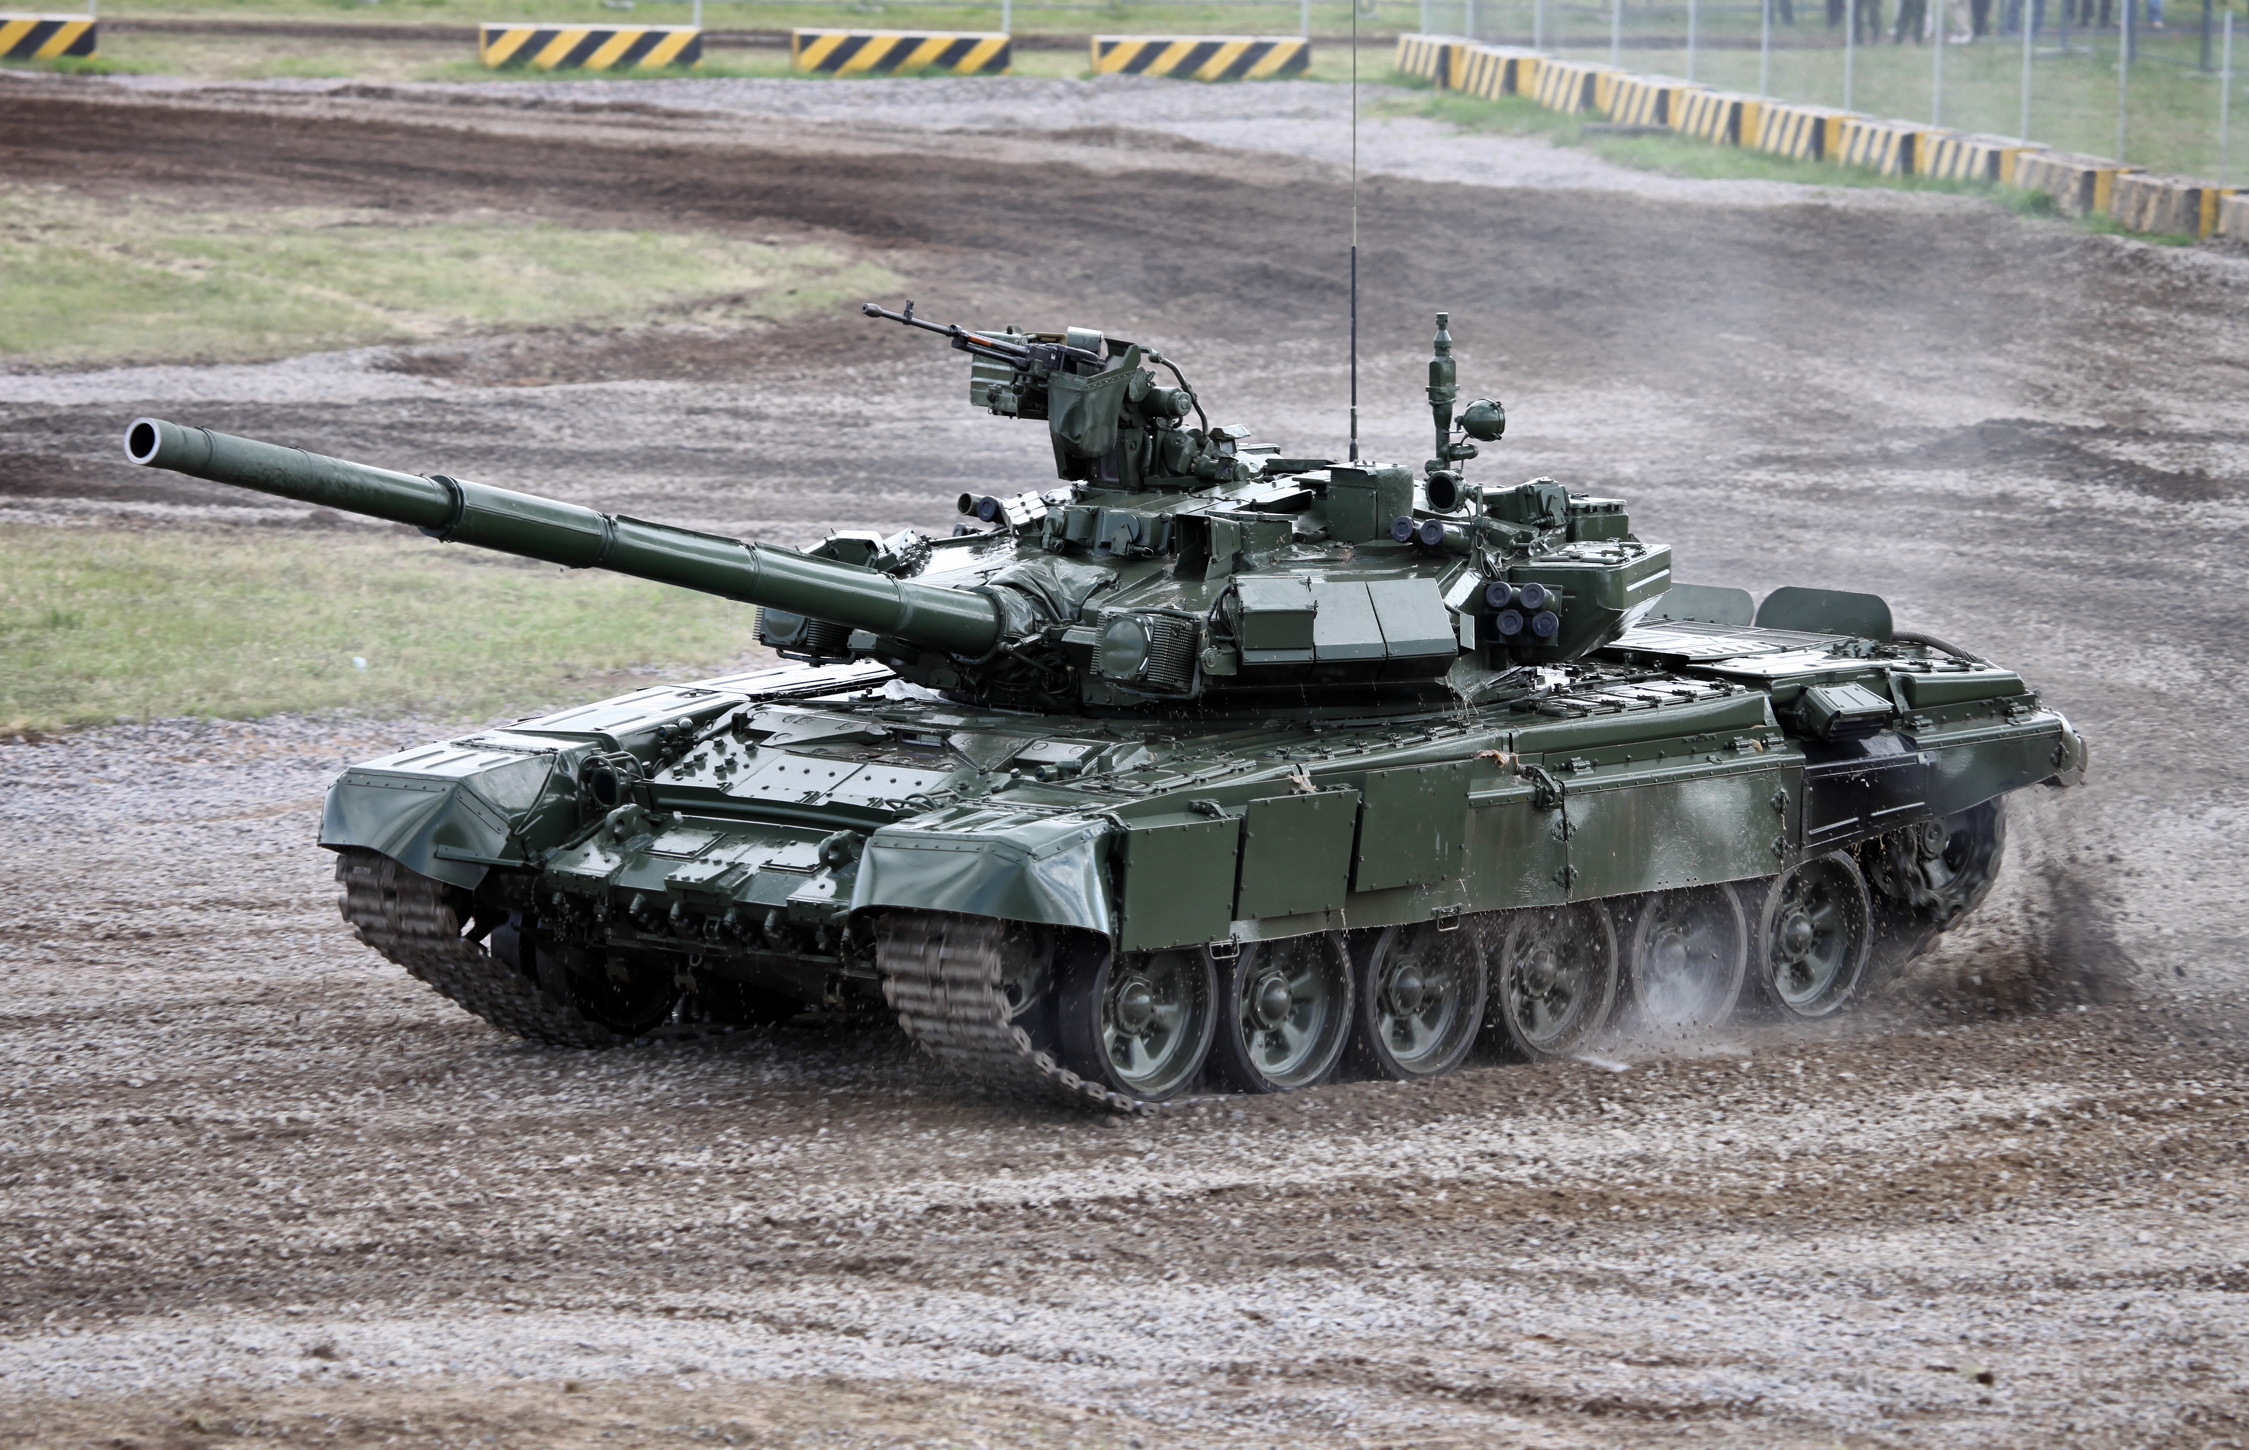 T-90 là một trong những xe tăng được ưa chuộng nhất trên thế giới nhờ vào thiết kế ấn tượng cùng khả năng chiến đấu tuyệt vời. Chắc chắn khi bạn xem ảnh của nó, bạn sẽ không khỏi ngạc nhiên trước sự mạnh mẽ và độc đáo của chiếc xe này.